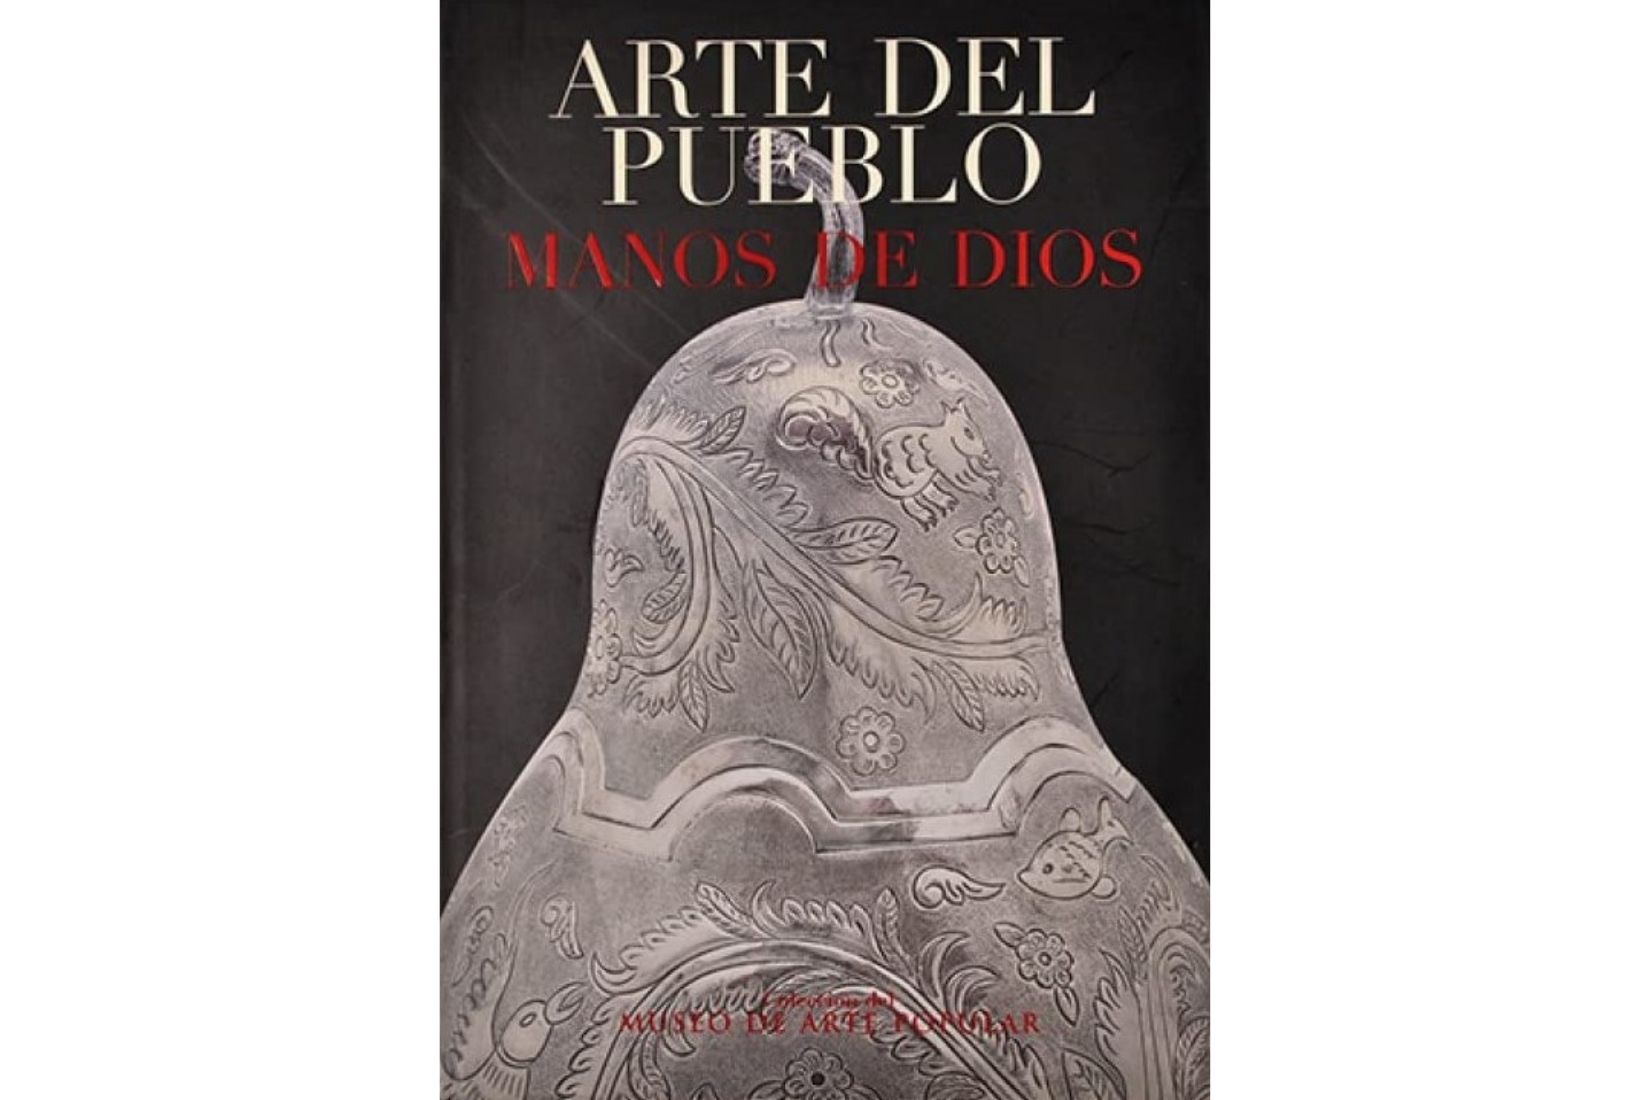 Portada del libro Arte del Pueblo, Manos de Dios Tomo I. Primera Edición.  Editorial Océano. 2004. (Foto: Nicola Lorusso).